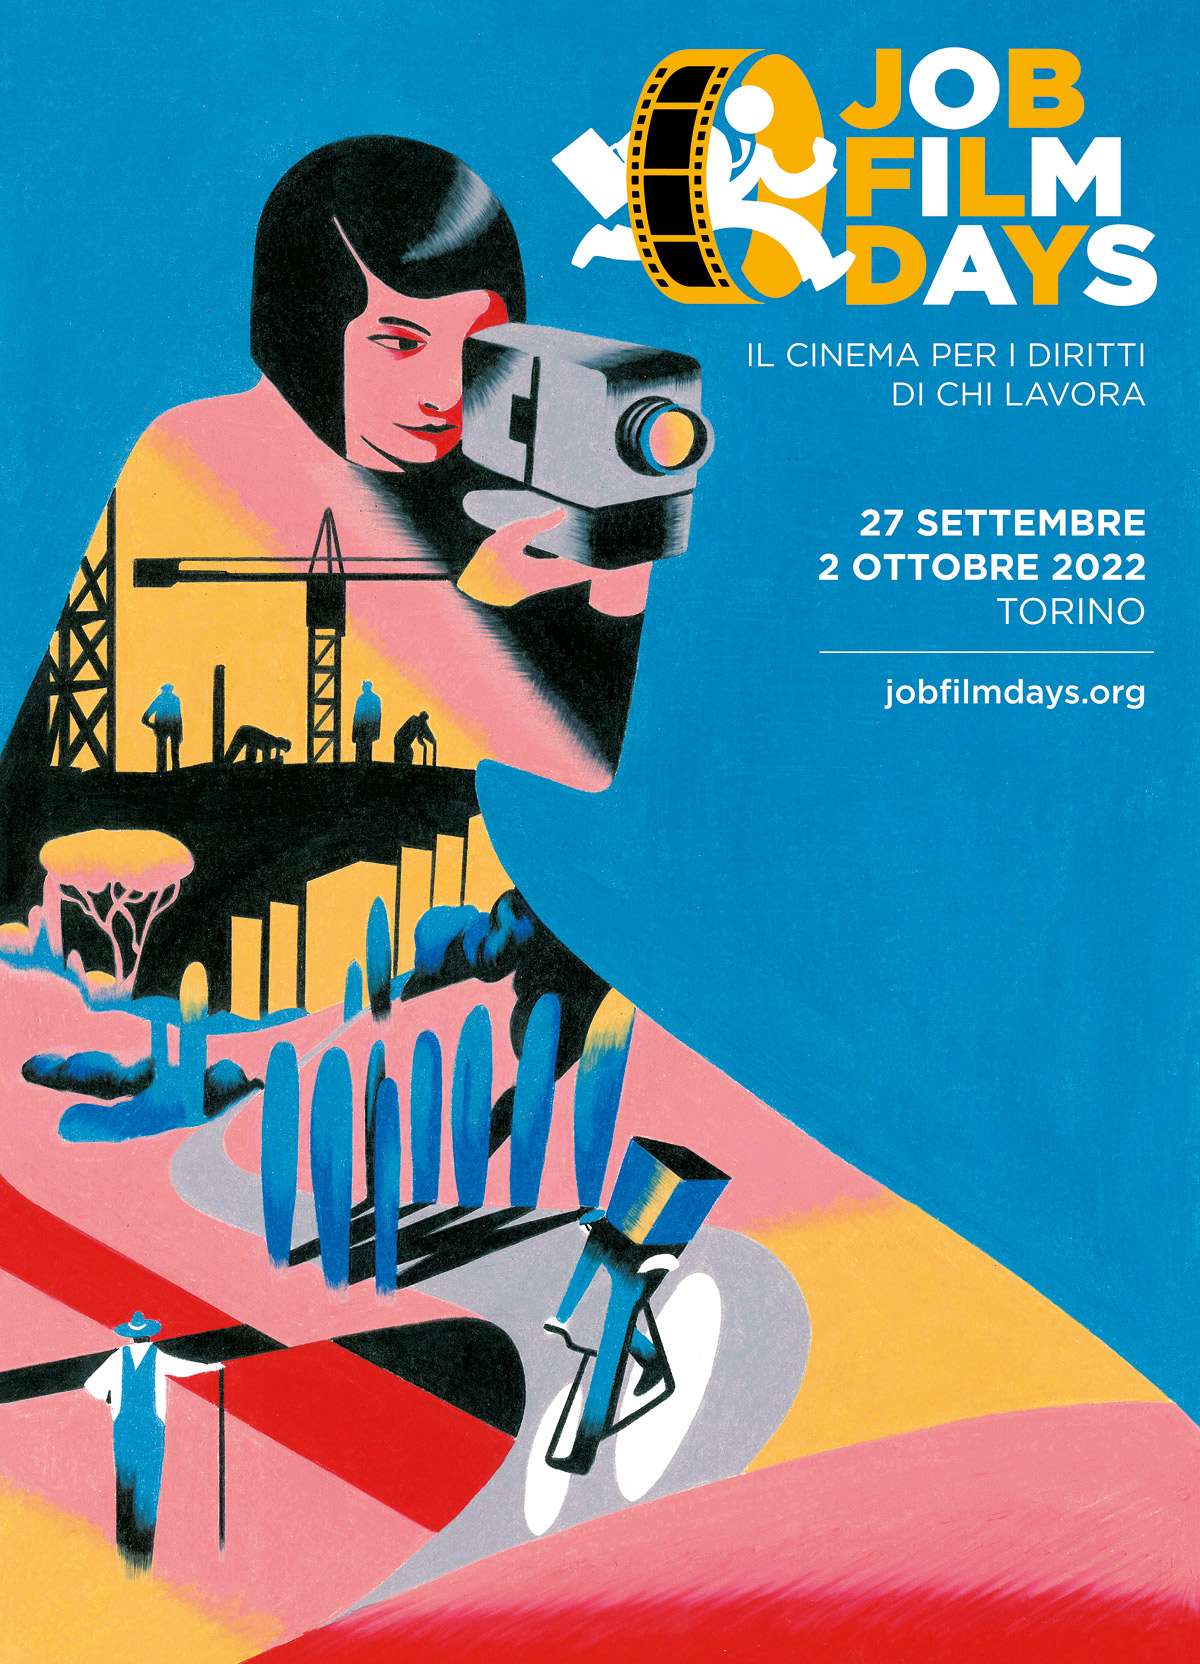 Antonio Pronostico firma l'immagine dei Job Film Days edizione 2022